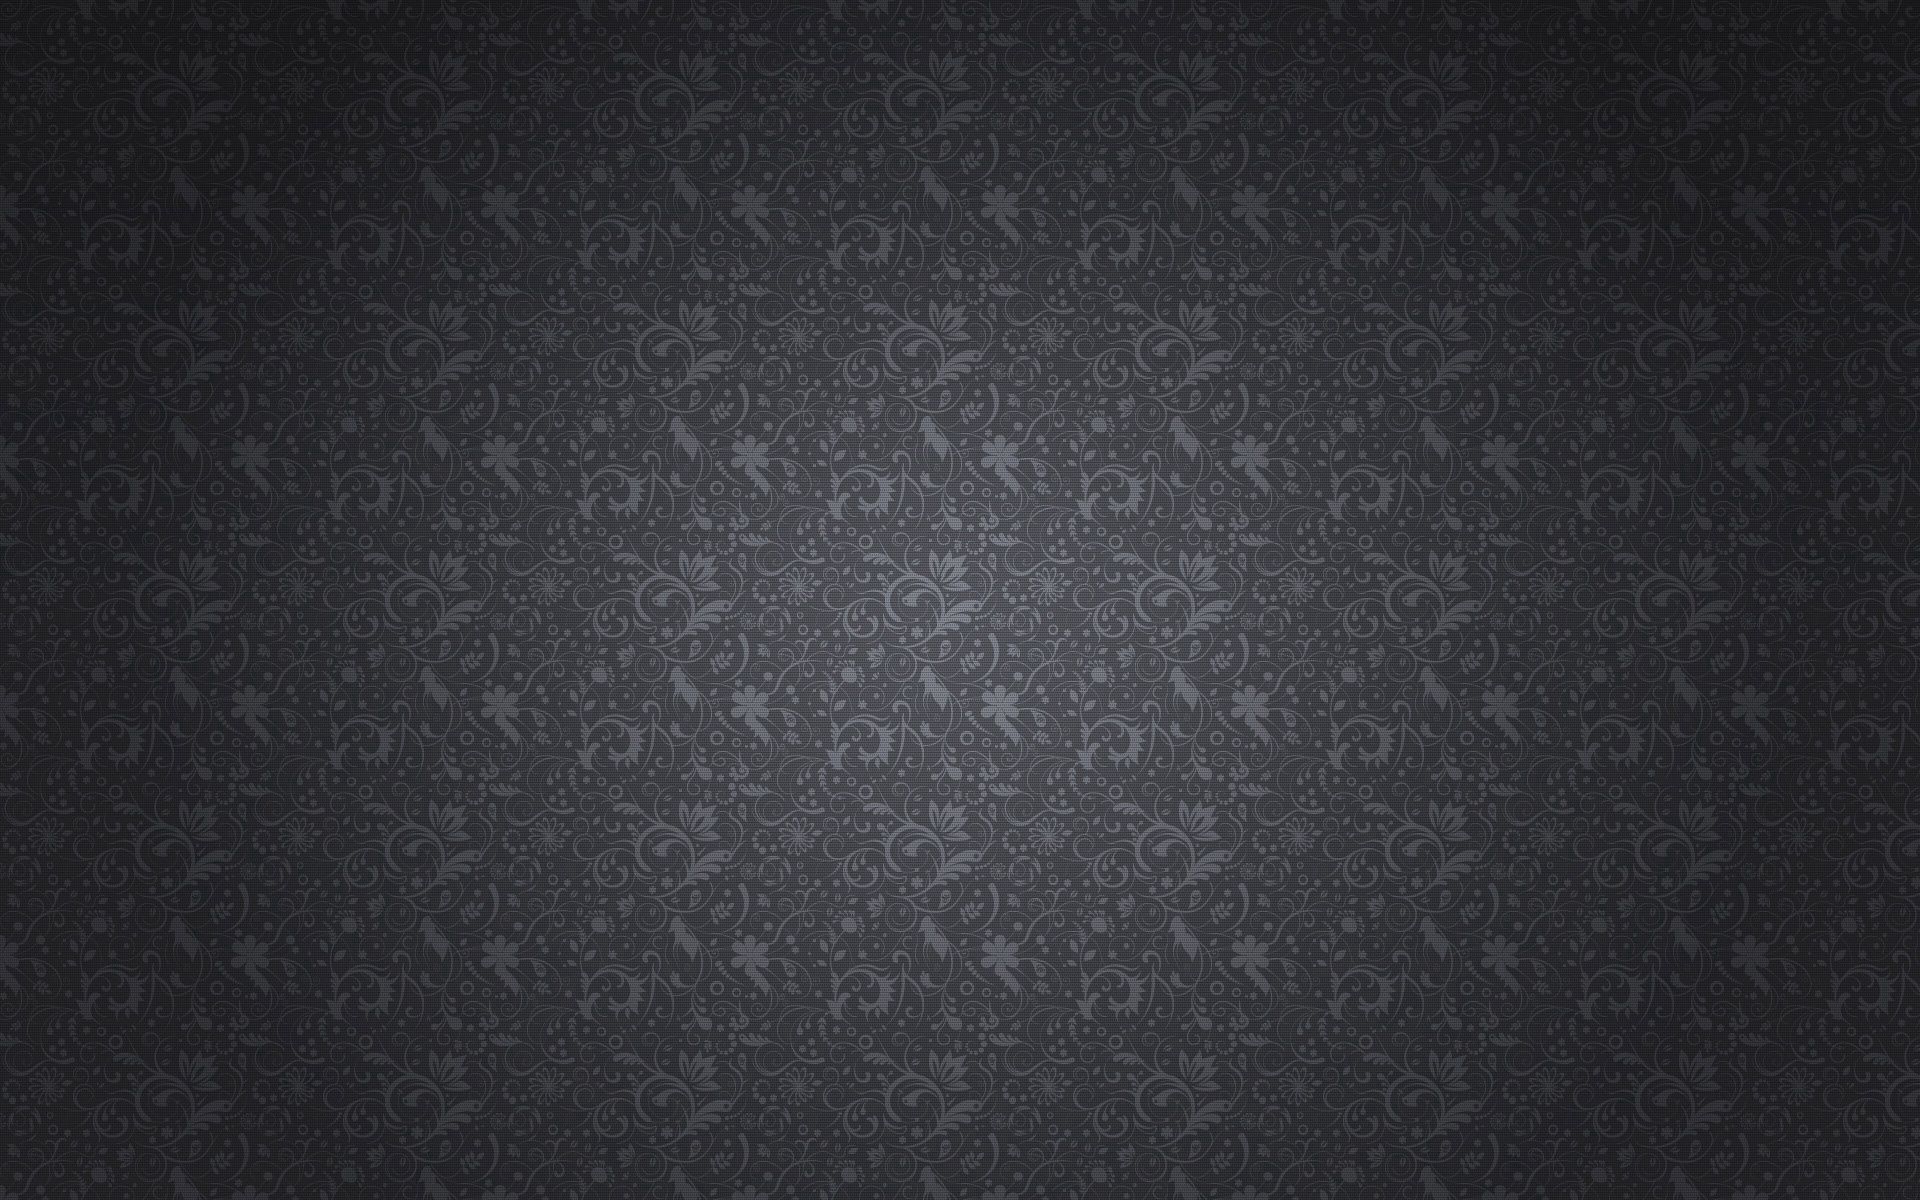 Pattern Wallpapers: Free HD Download [500+ HQ] | Unsplash